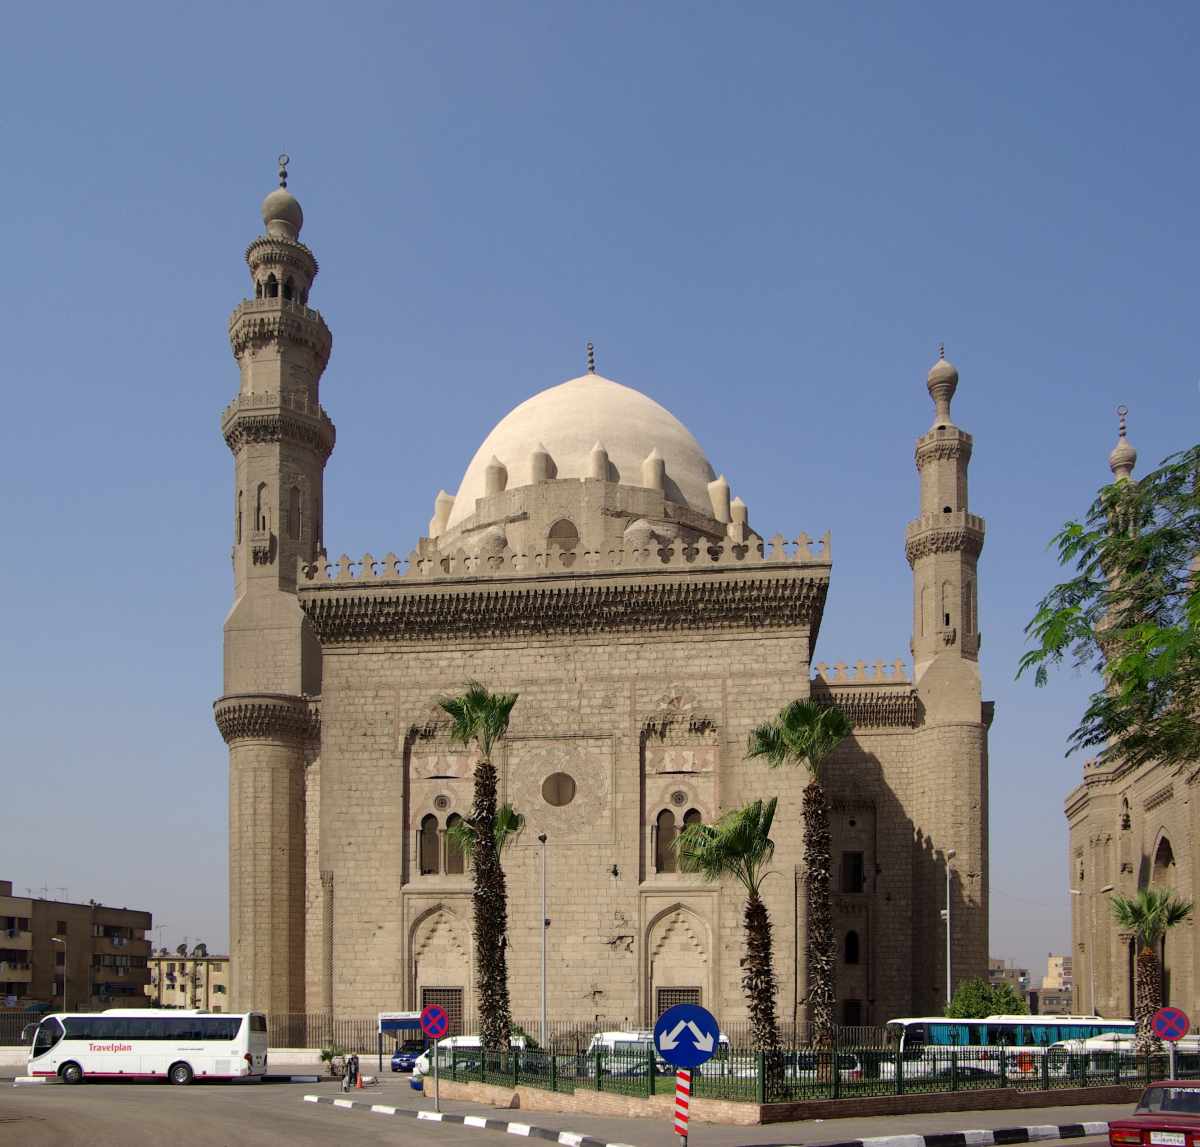 Kairo – Megastadt im Strudel des Umbruchs in der arabischen Welt